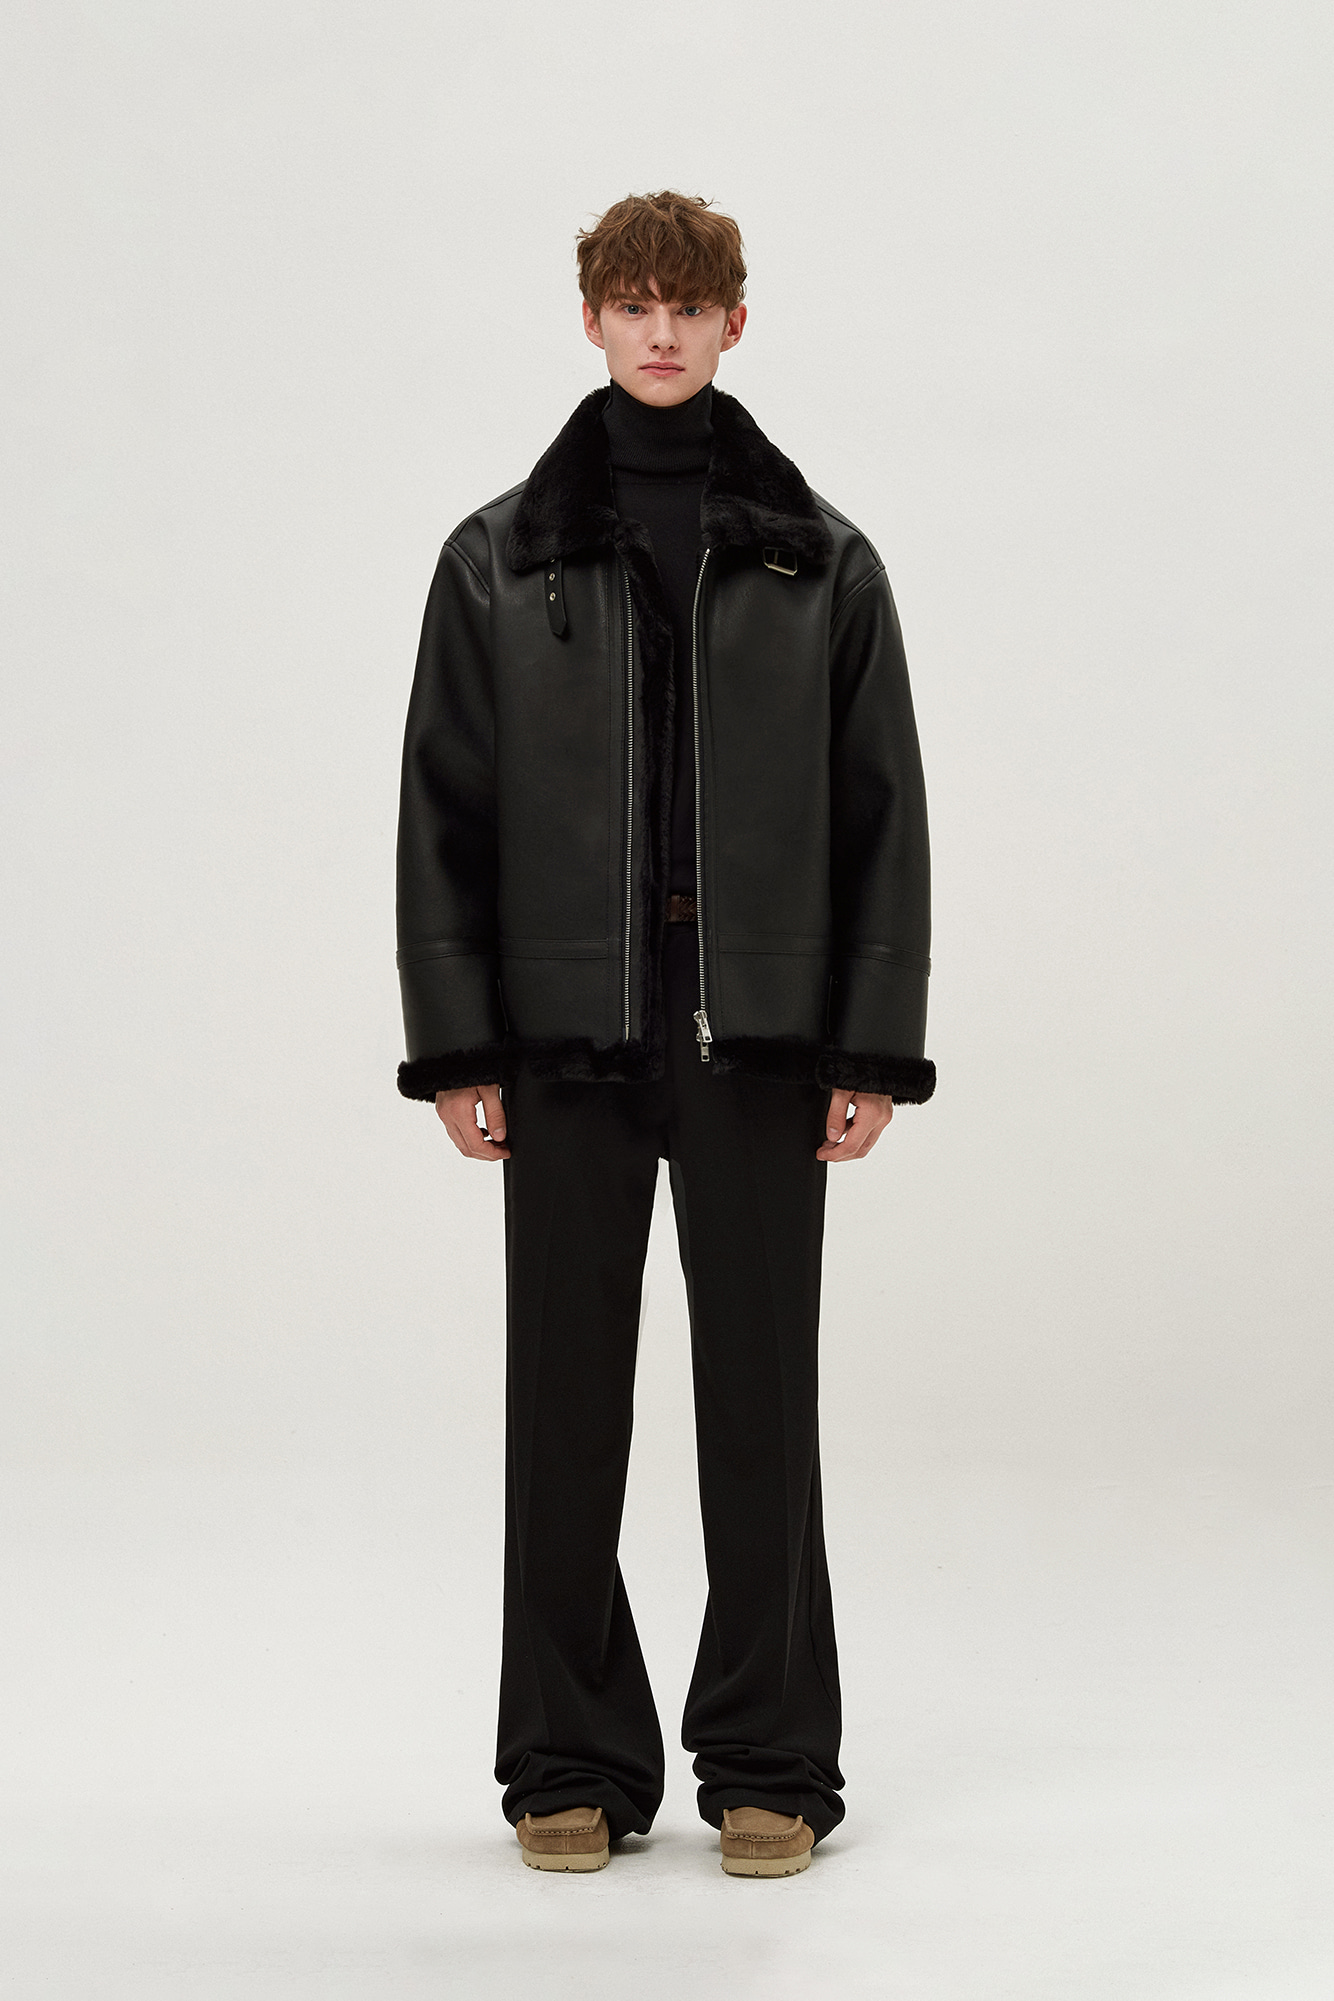 Overfit solid mouton jacket (black)